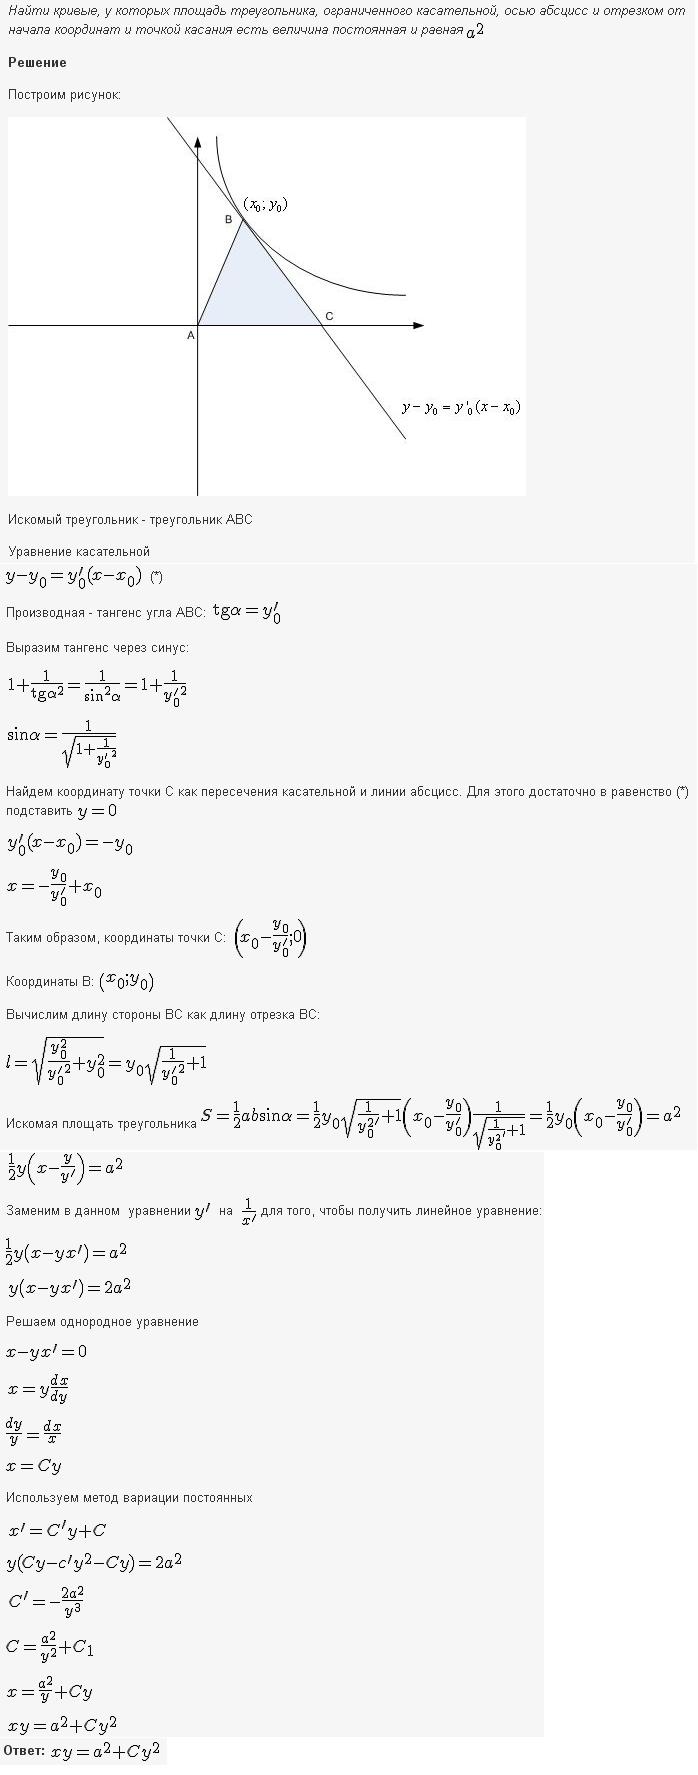 Линейные уравнения первого порядка - решение задачи 174